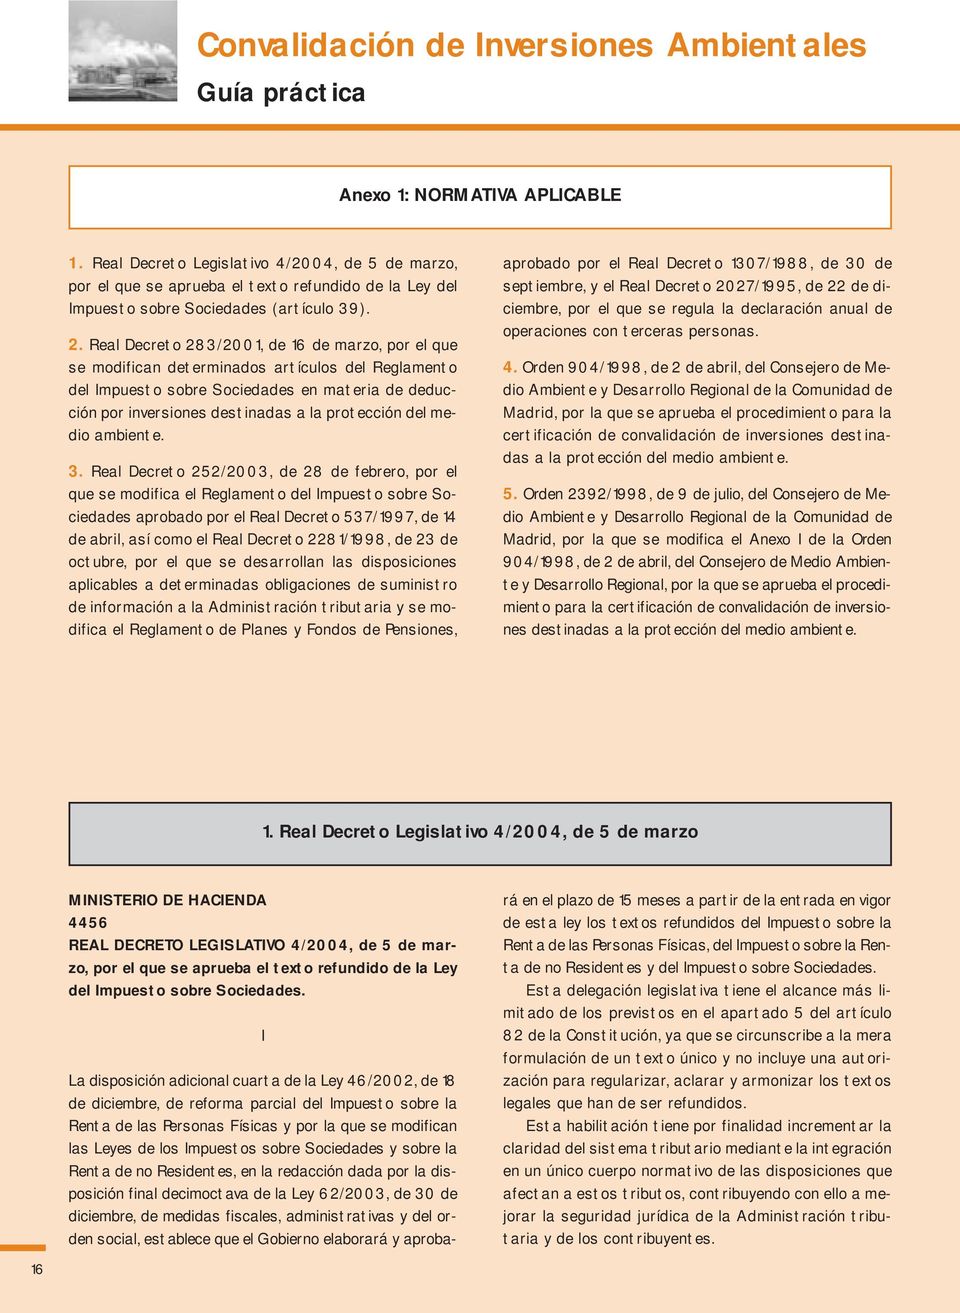 Real Decreto 283/2001, de 16 de marzo, por el que se modifican determinados artículos del Reglamento del Impuesto sobre Sociedades en materia de deducción por inversiones destinadas a la protección